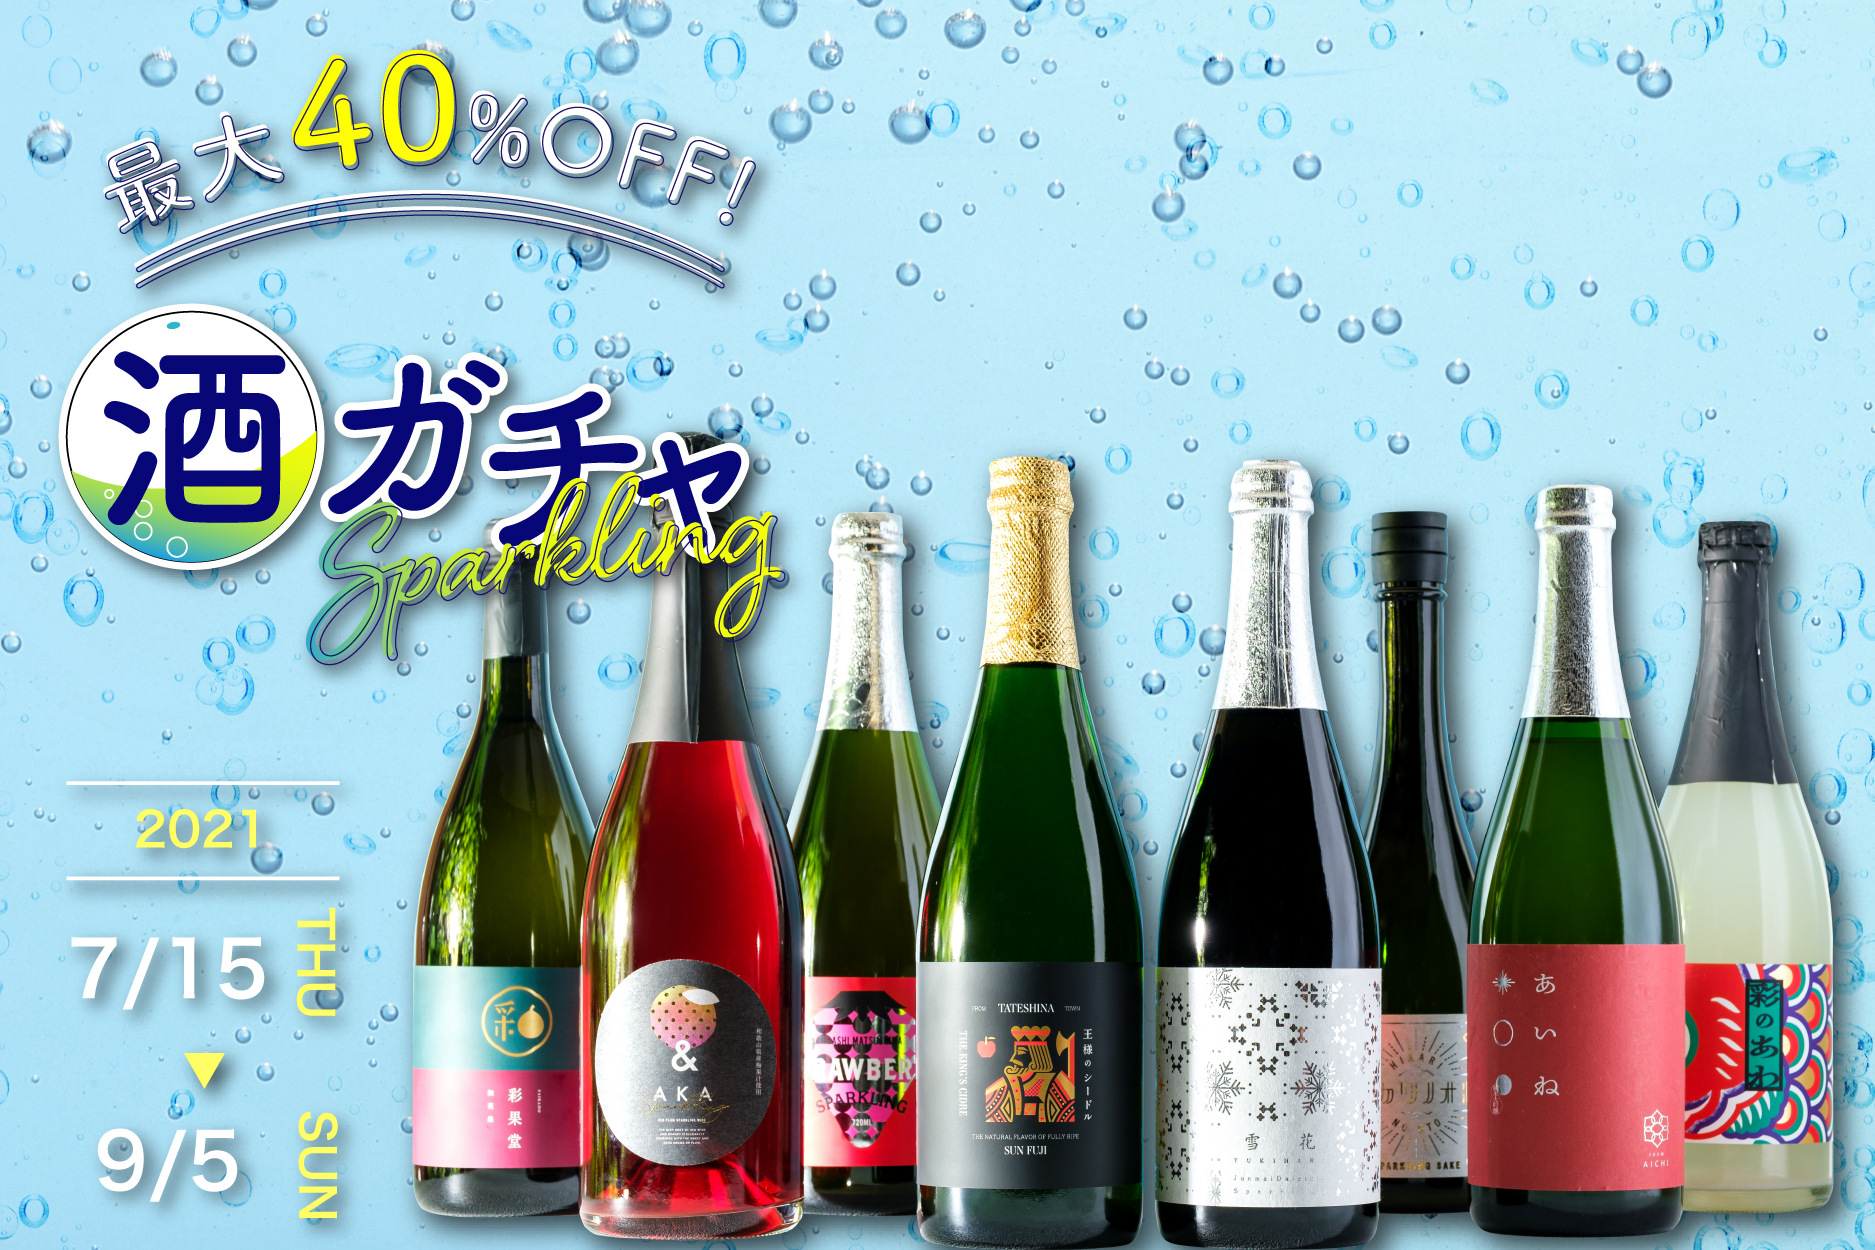 日本で唯一の「食用米専門酒蔵」が最高級コシヒカリでつくる純米大吟醸スパークリング「ヒカリノオト」